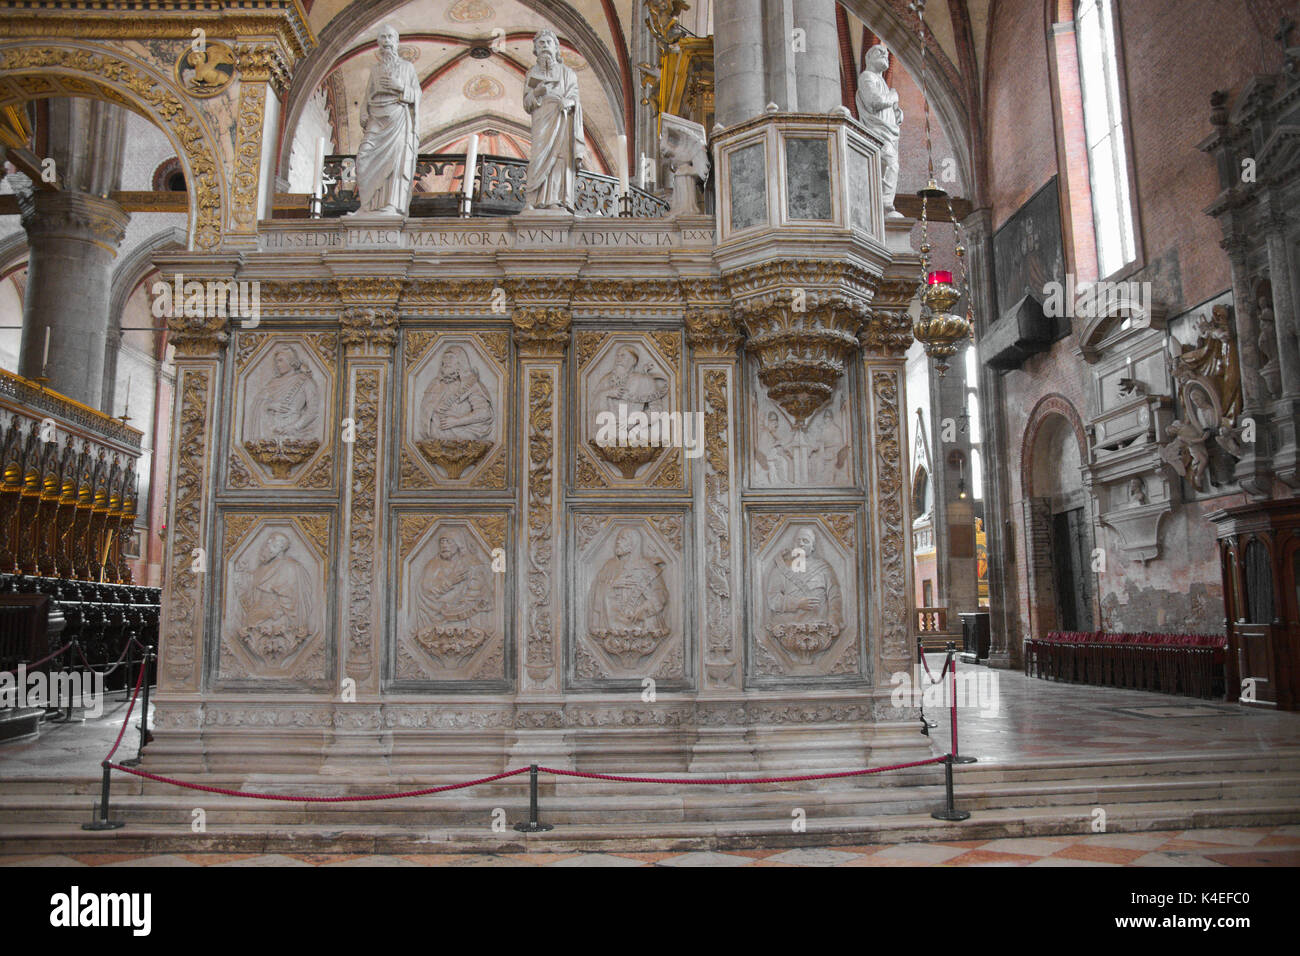 Venezia Veneto Italia. La Basilica di Santa Maria Gloriosa dei Frari, fregi sul coro entrata. Foto Stock